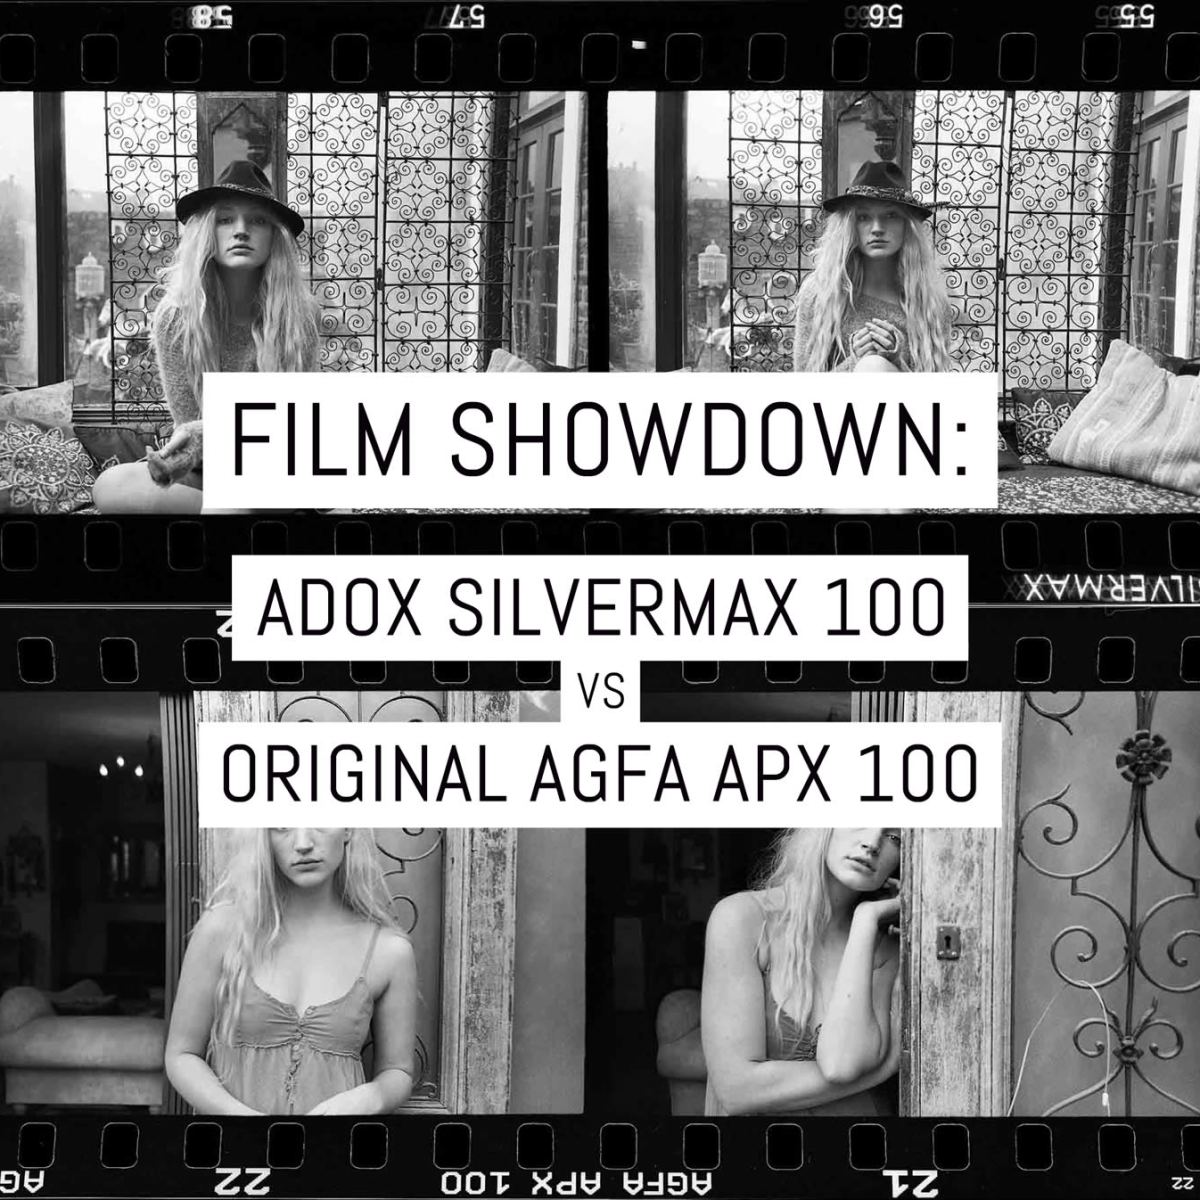 Cover - Film showdown - ADOX Silvermax 100 vs original Agfa APX 100